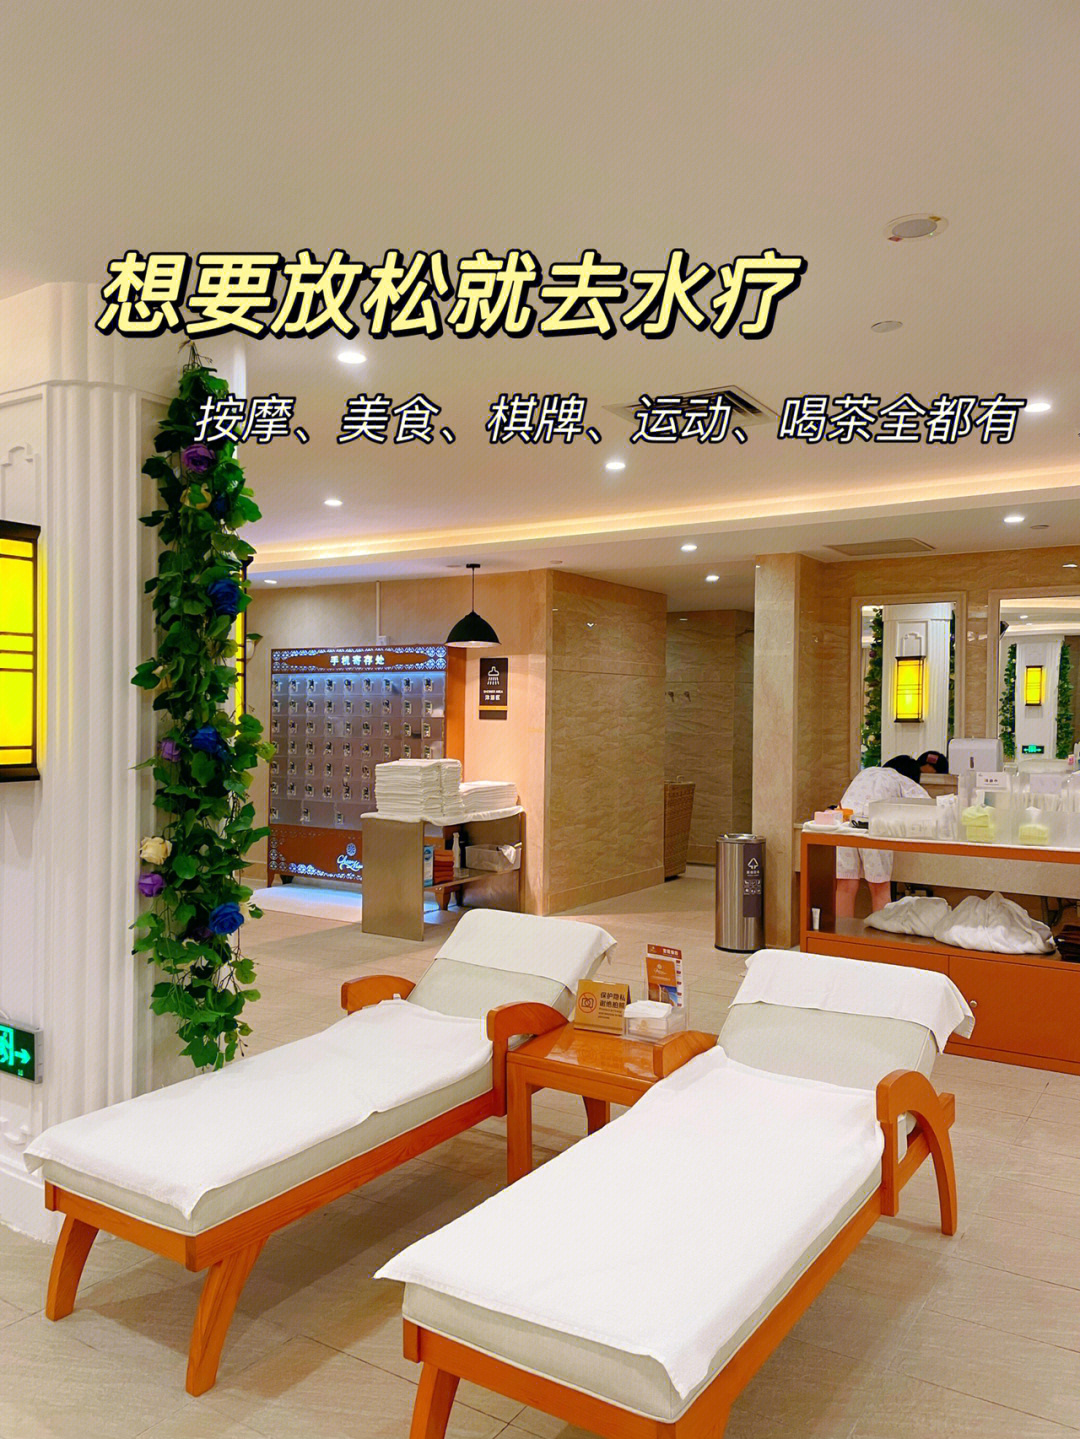 广州总统大酒店水疗图片